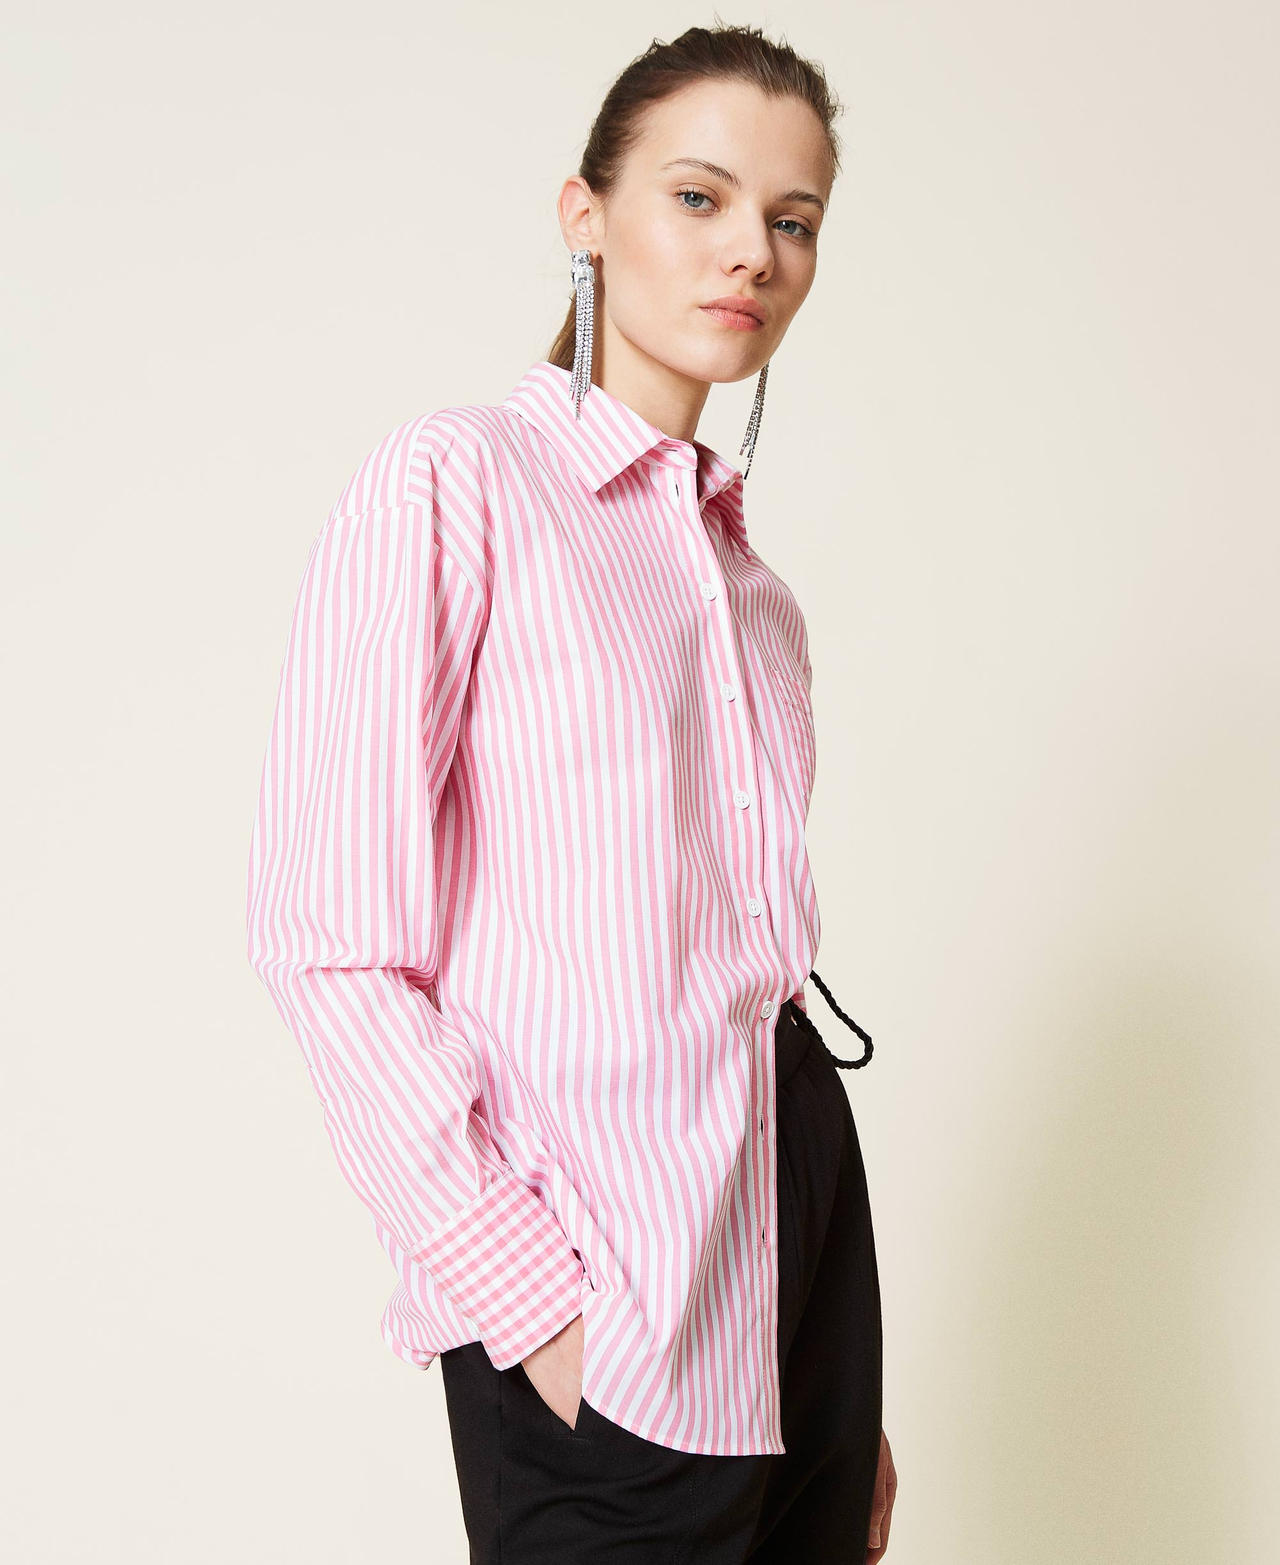 Camisa de rayas con inserciones Vichy Bicolor Off White / Rosa «Hot Pink» Mujer 221AT2251-03